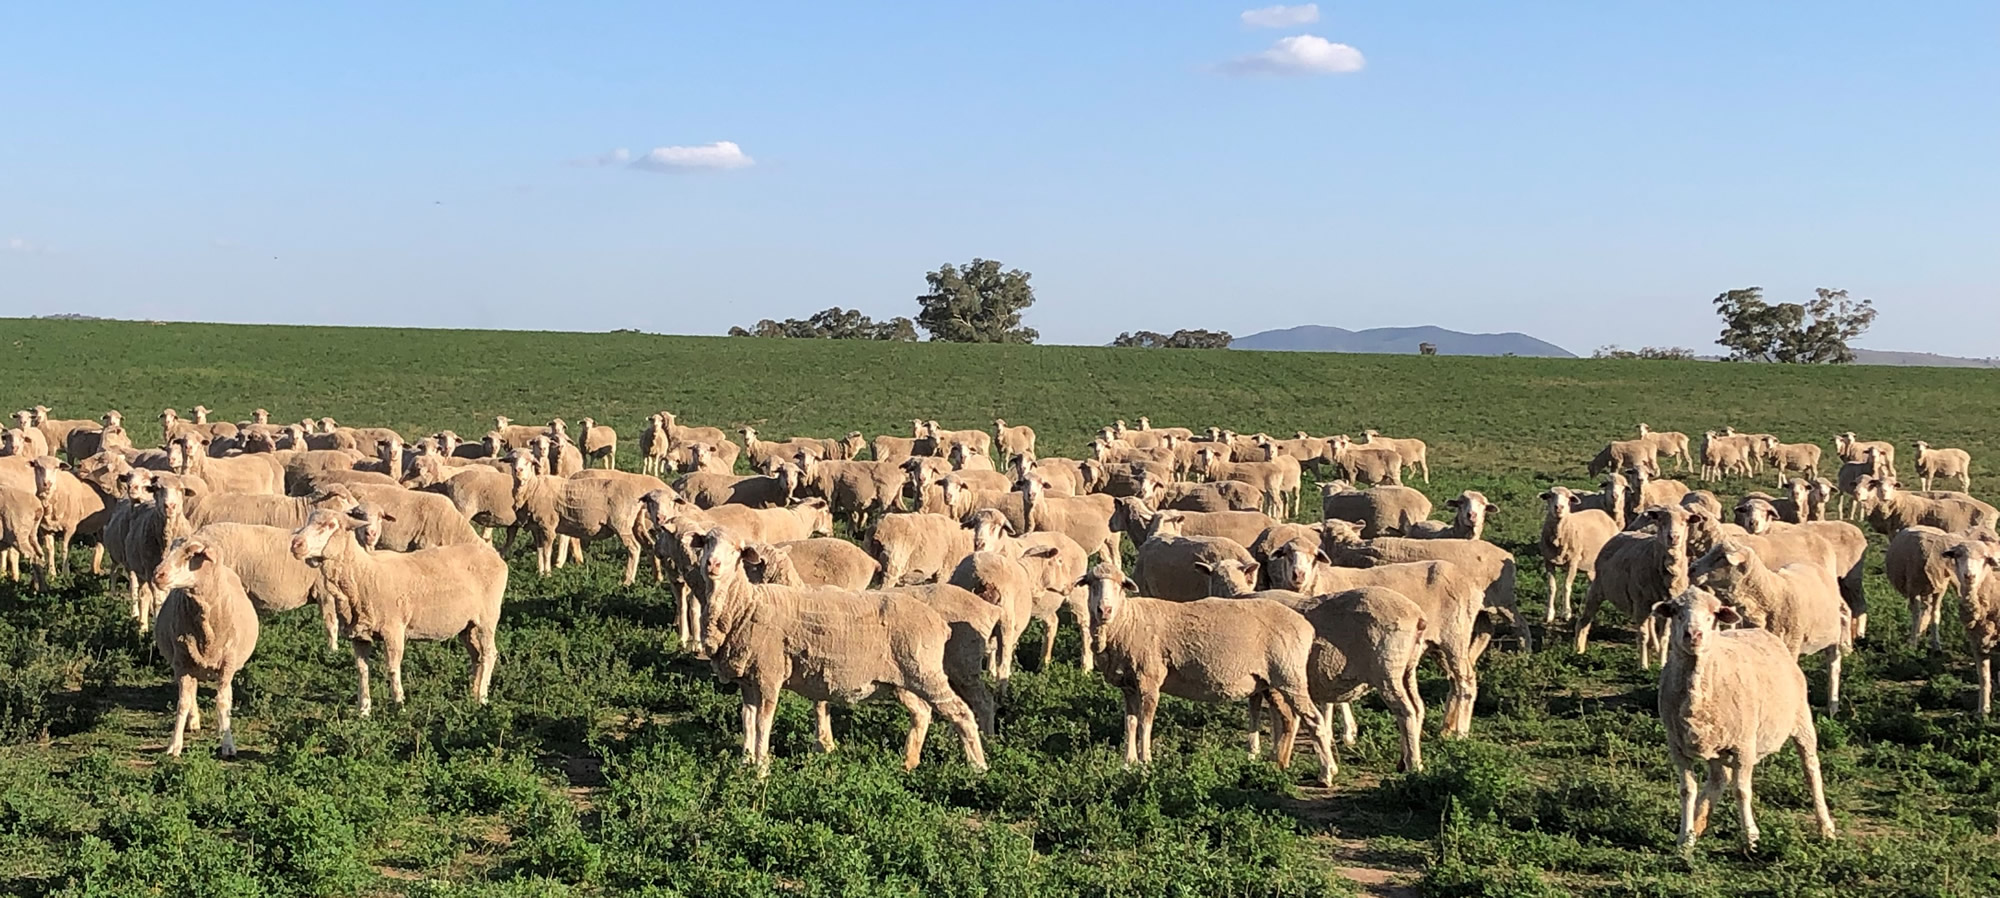 sheep-grazing.jpg